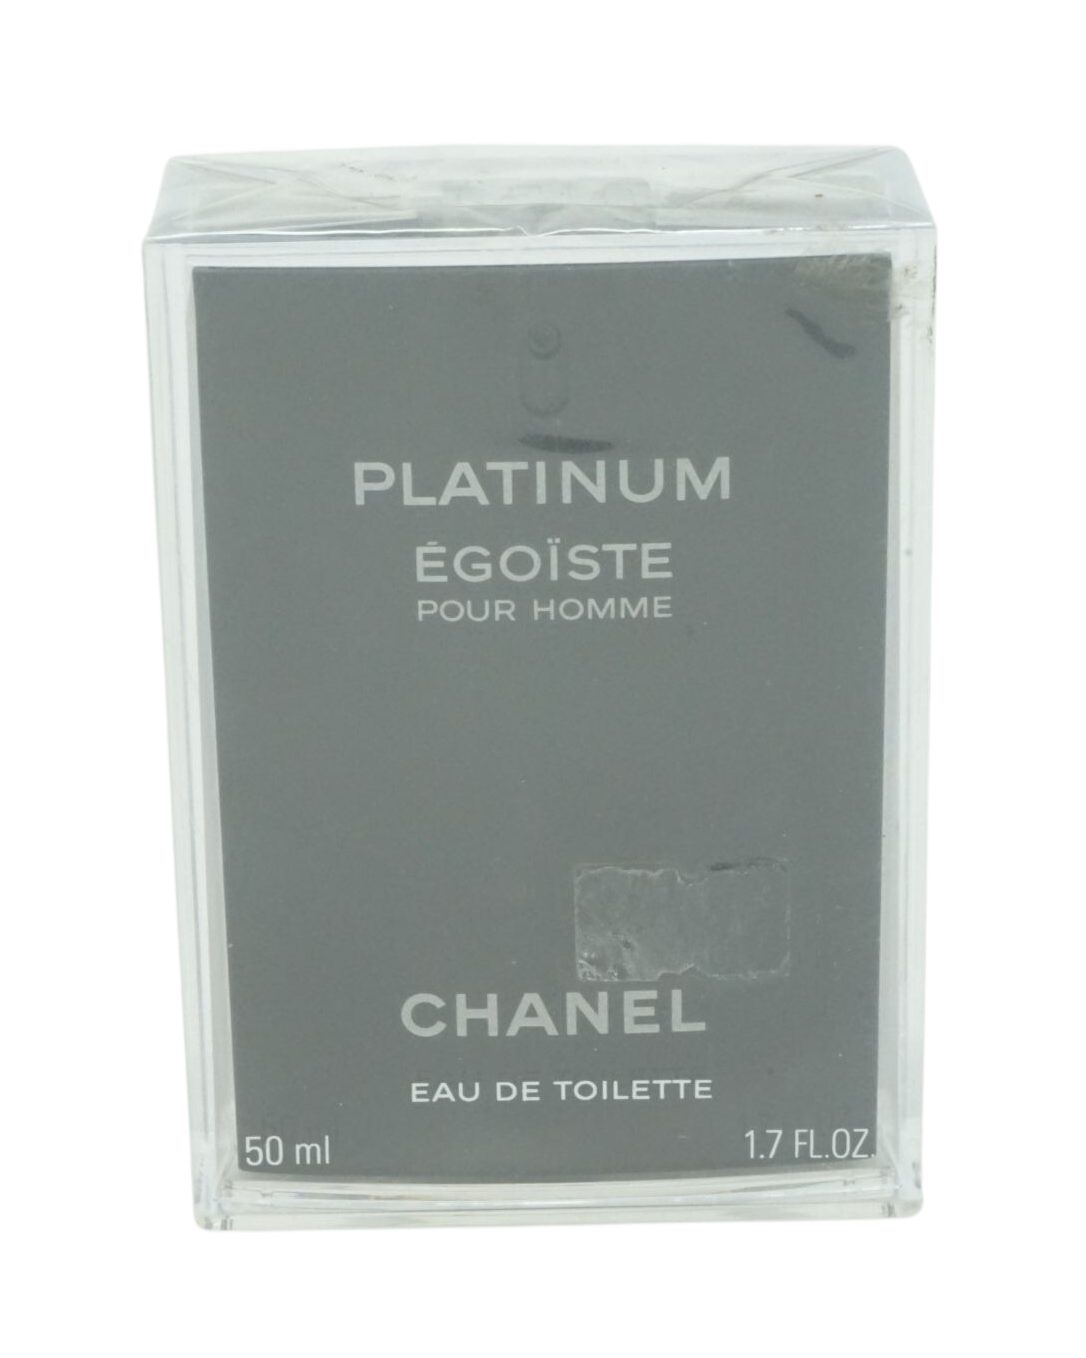 CHANEL Eau de Toilette Chanel Platinum Egoiste Pour Homme Eau de Toilette 50ml